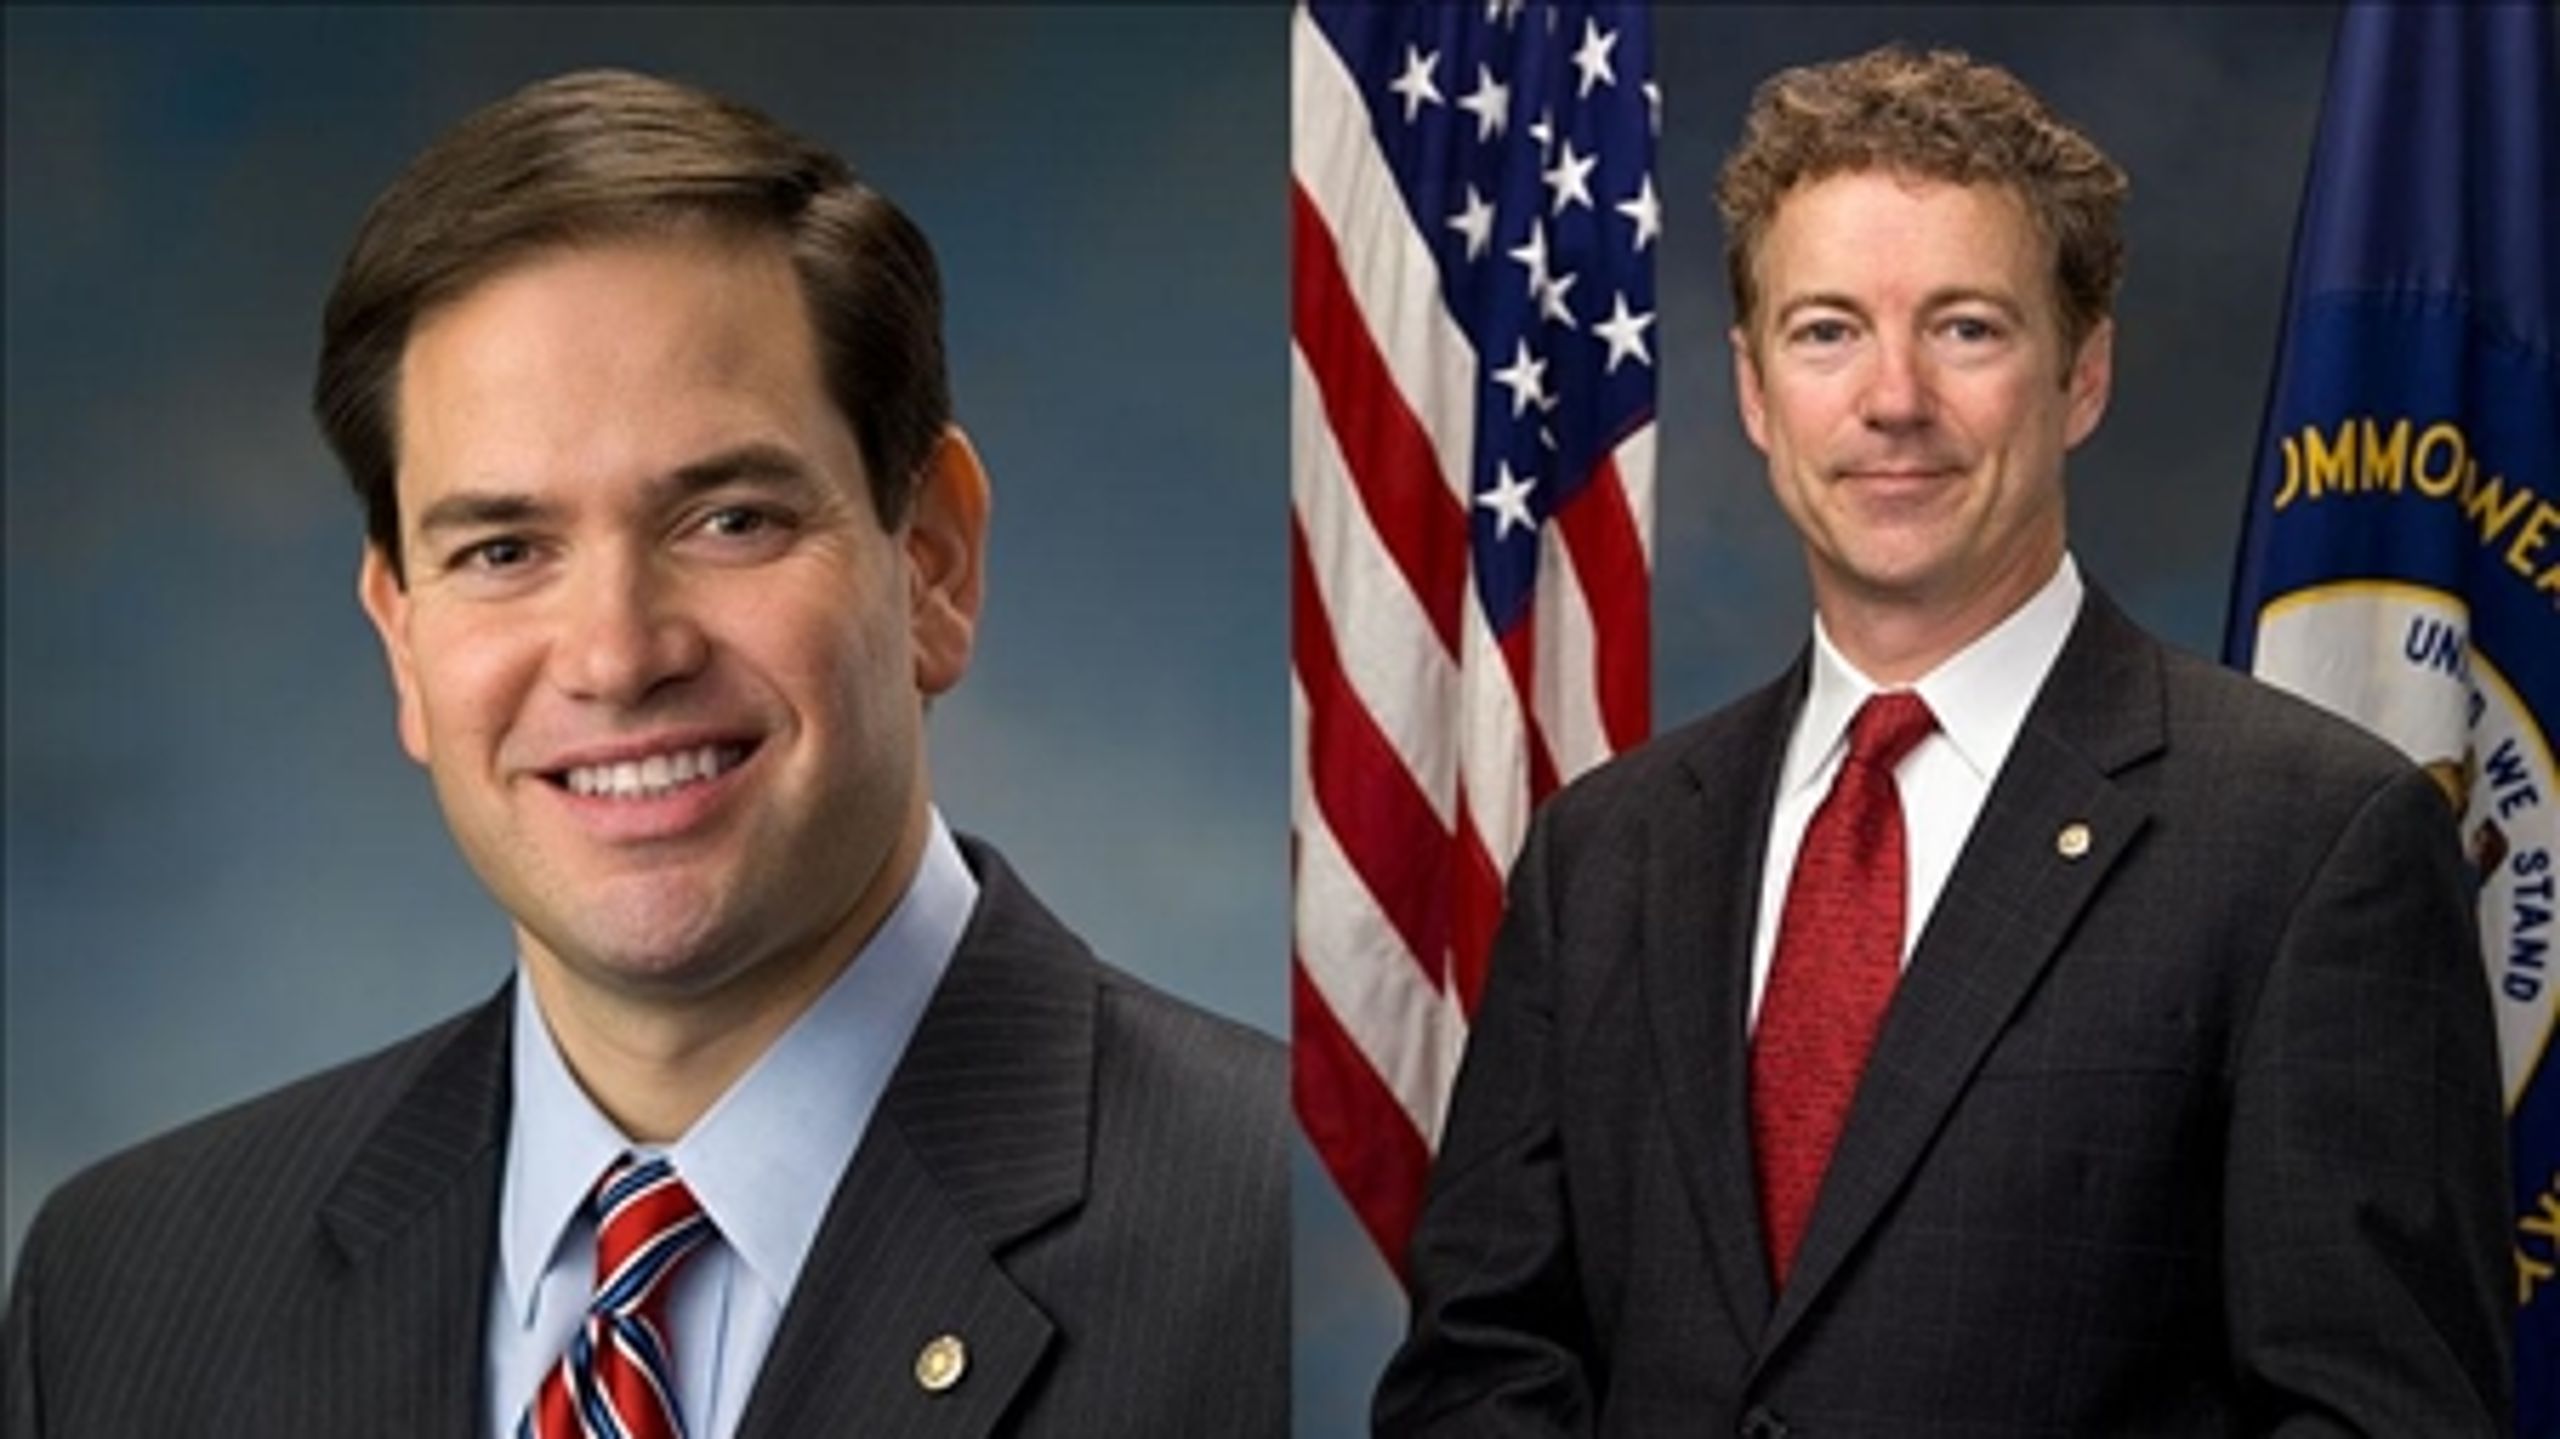 Republikanerne Marco Rubio (t.v.) og Rand Paul (t.h.) ser ud til at repræsentere de to vigtigste fløje ved den konservative konference.